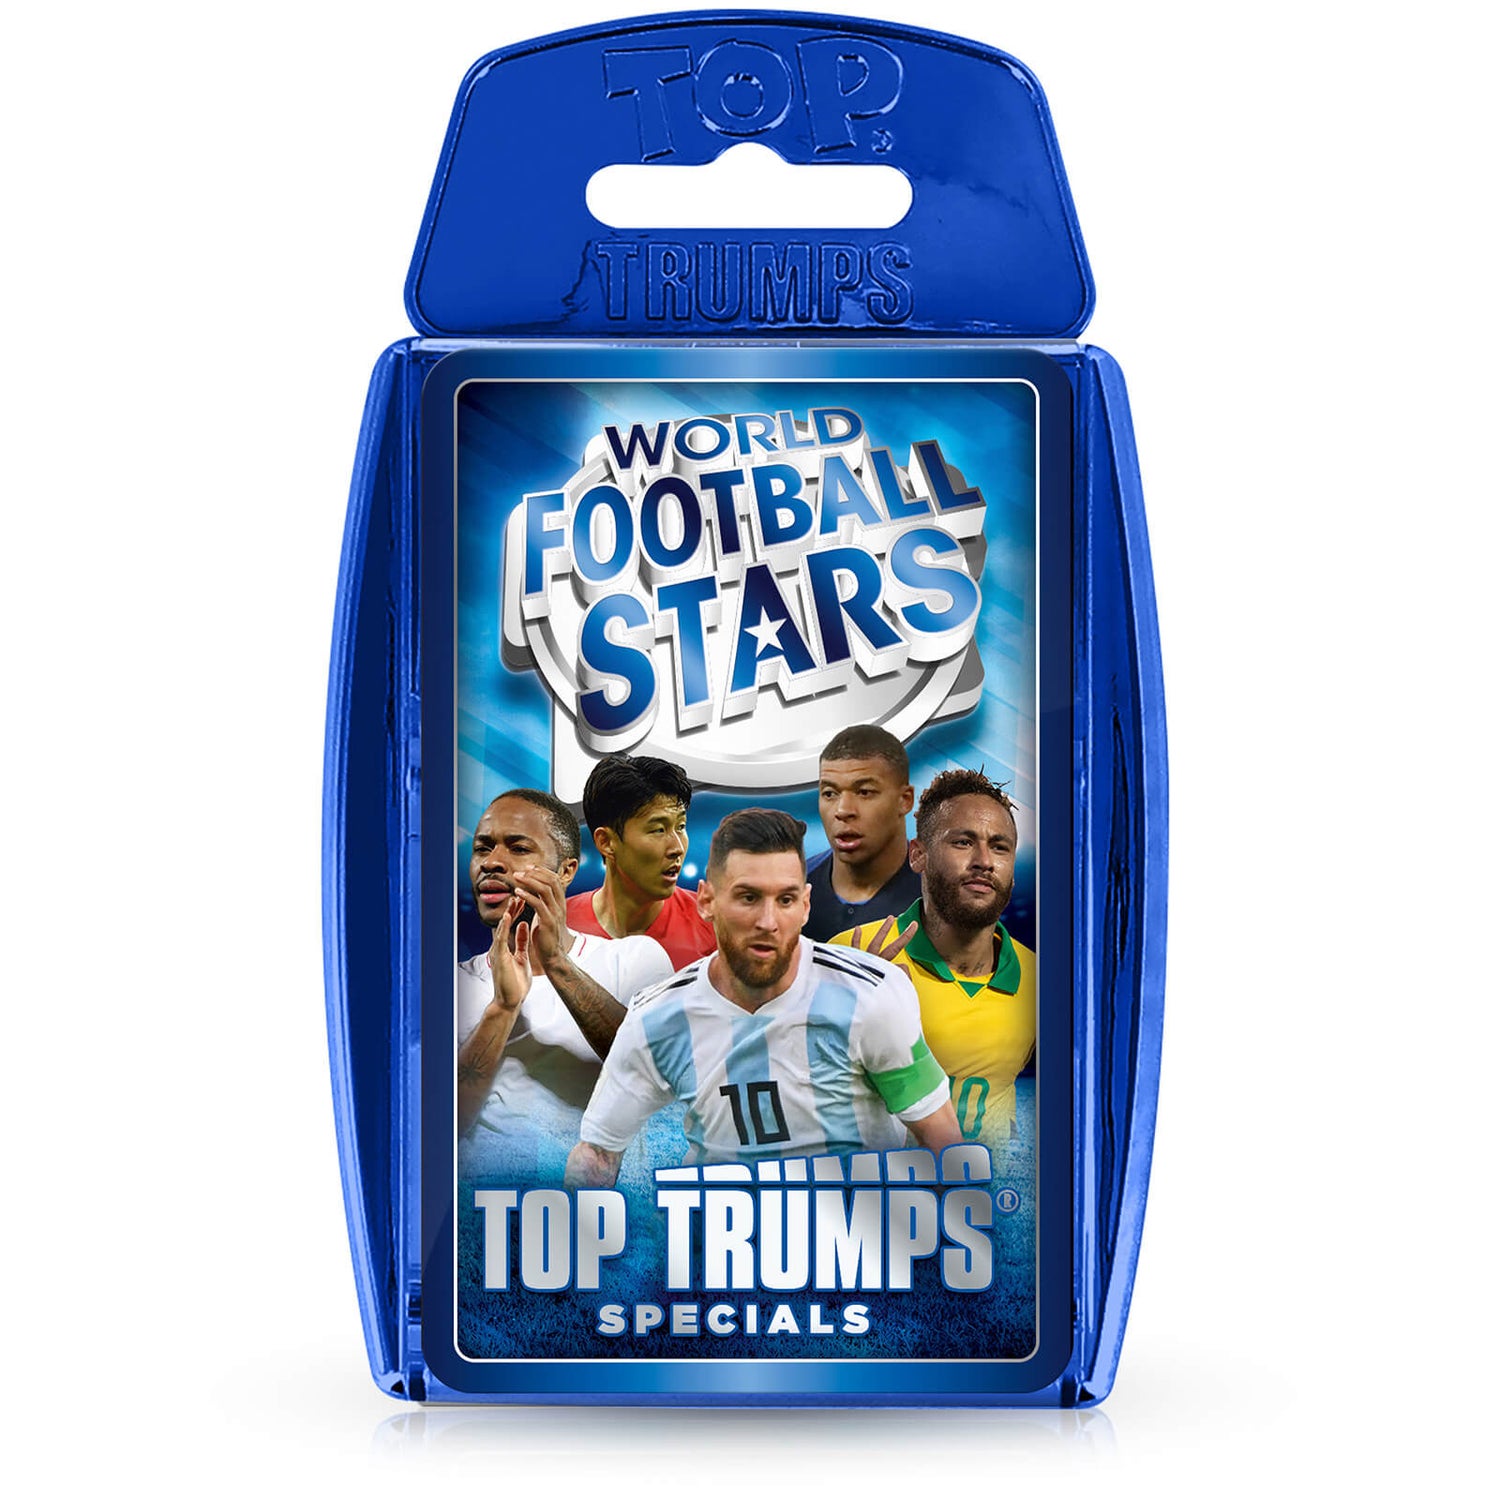 Top Trumps Specials - World Football Stars Top Trumps Edition